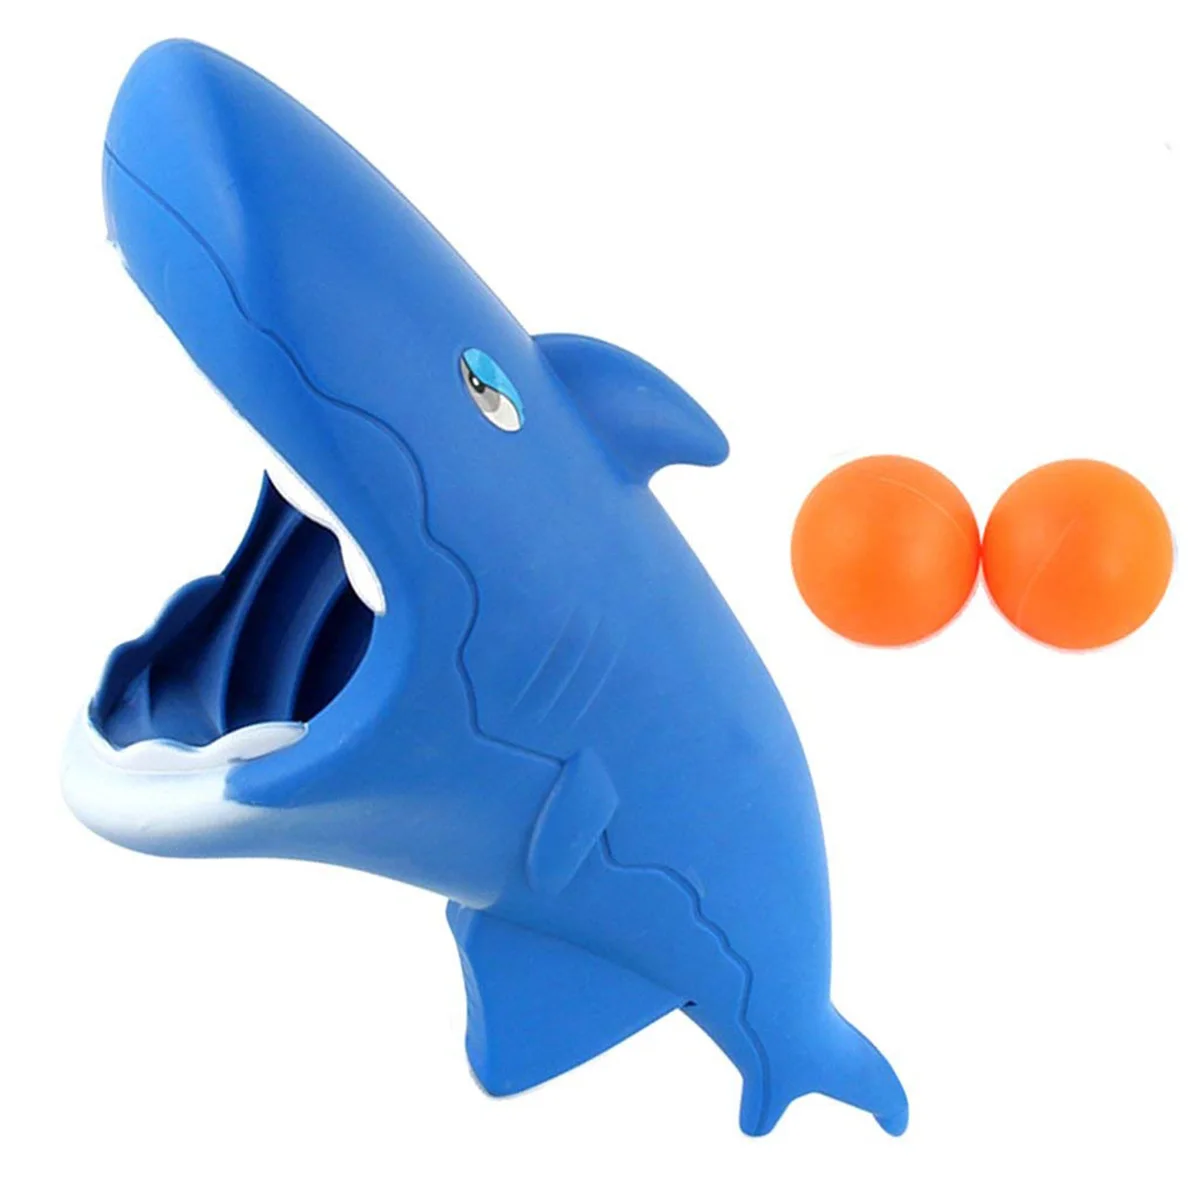 1 компл.. Акула моделирование катапульта Запуск приклад прыгающий мяч игрушки для детей запуск и поймать мяч игрушка